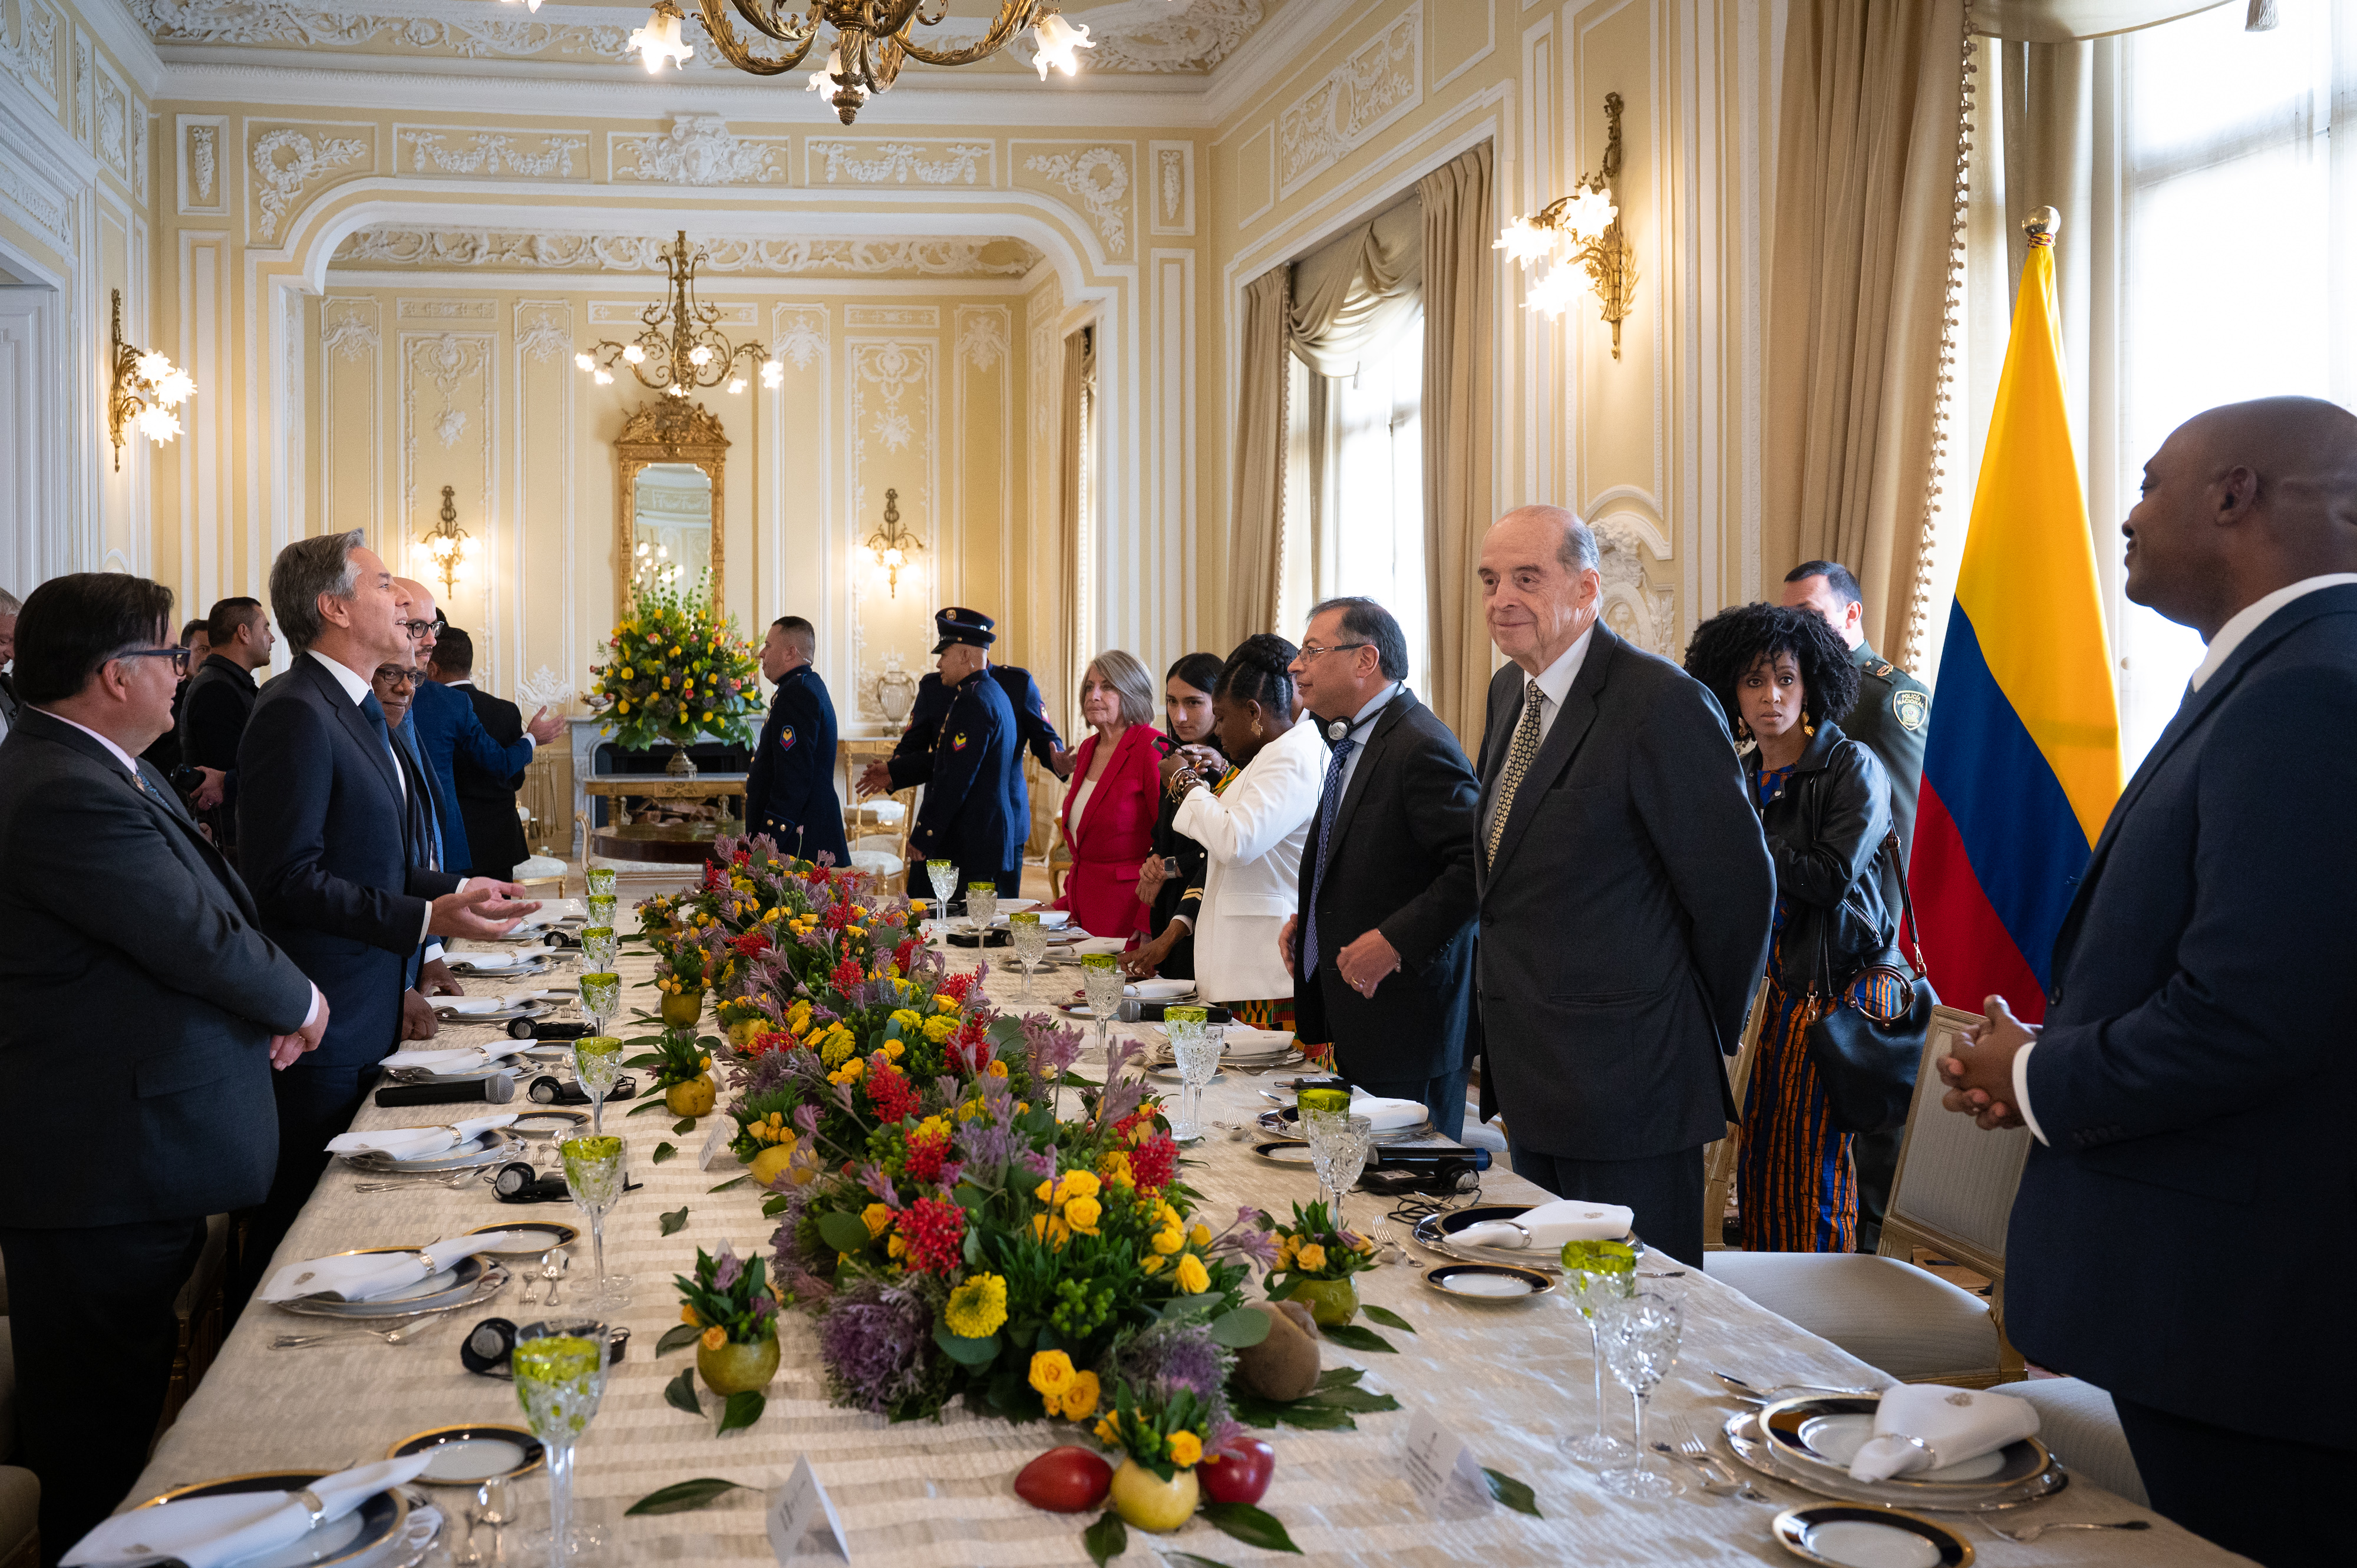 Ministro de Relaciones Exteriores, Álvaro Leyva Durán, recibió en la Casa de Nariño al Secretario de Estado de EE.UU. Antony Blinken